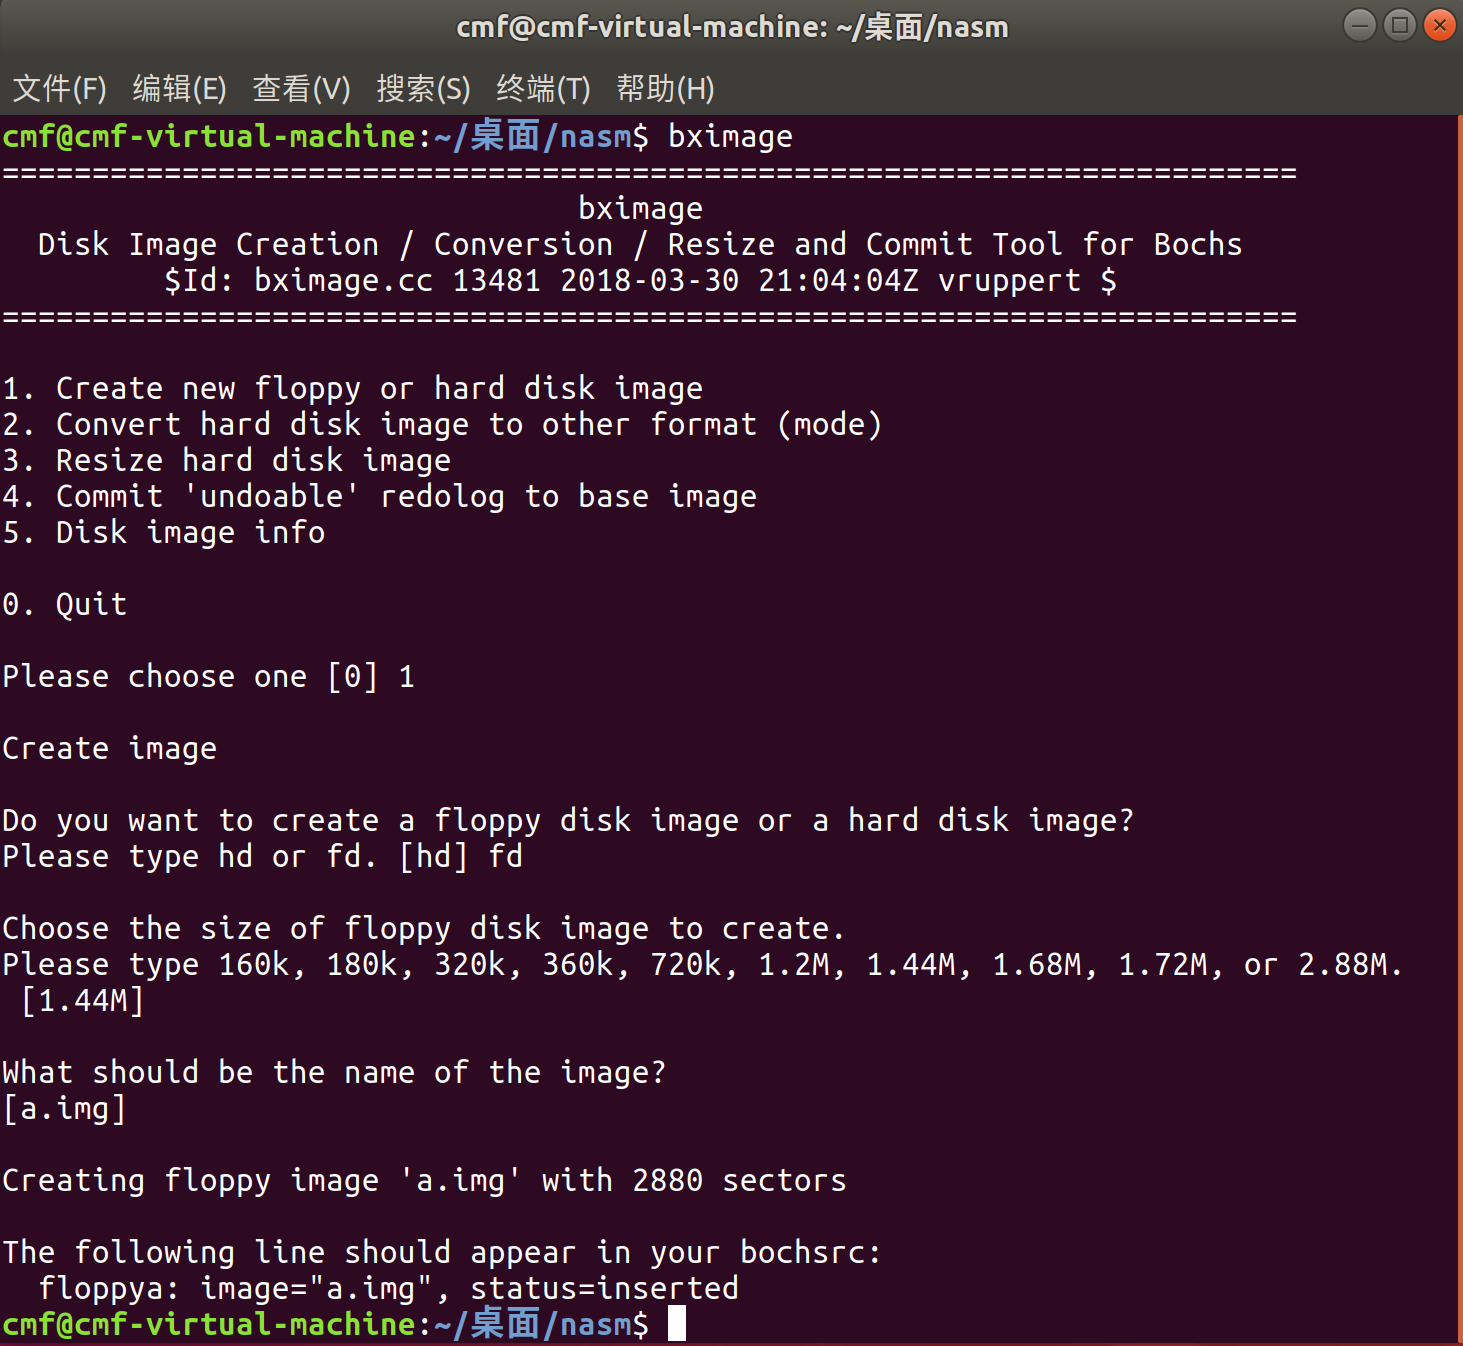 ubuntu bochs linux 0.11